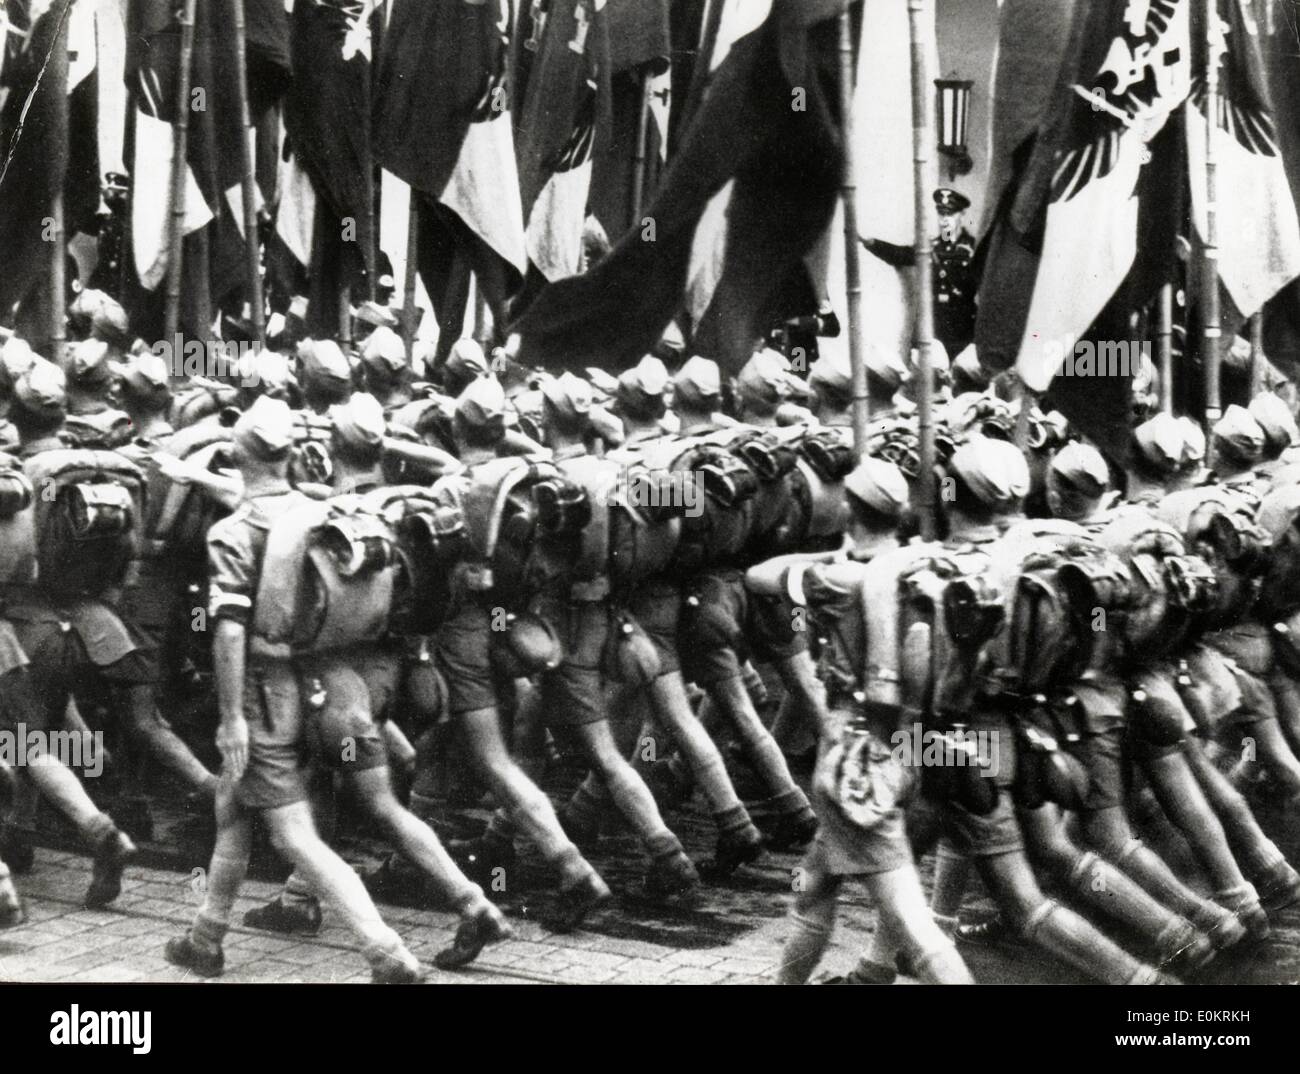 Enero 01, 1940 - Berlín, Alemania - Foto de archivo: circa 1930S-1940s. El Movimiento Juvenil Nazi. Foto de stock